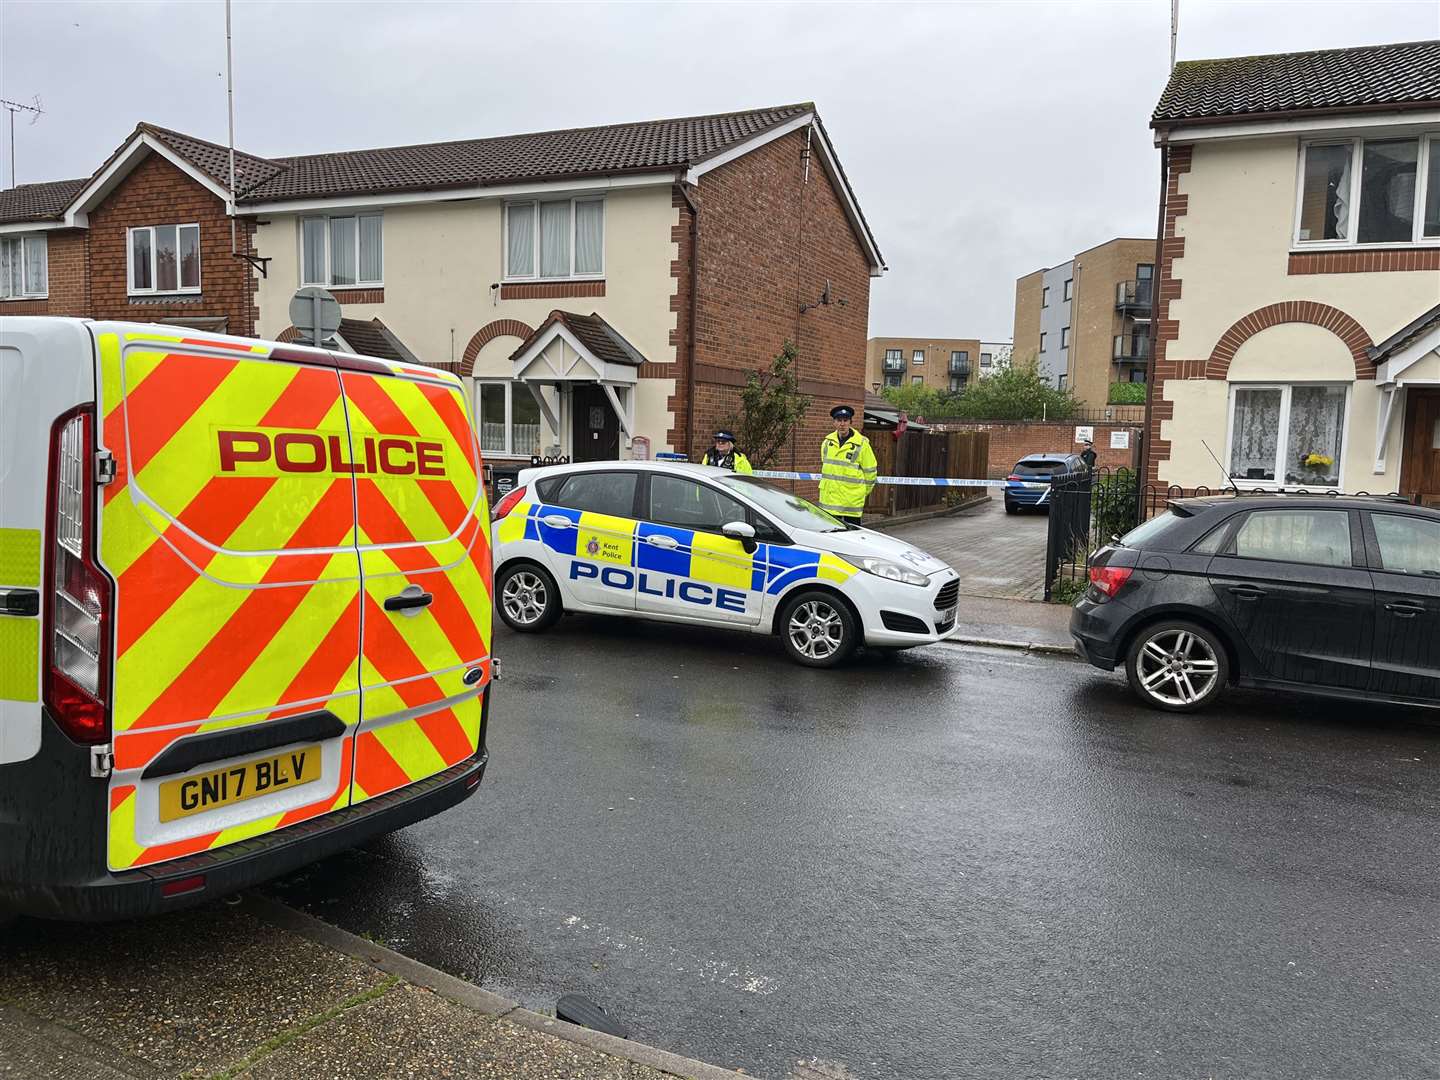 Police officers at the scene in Priory Road, Dartford, Kent (Joseph Draper/PA Media)